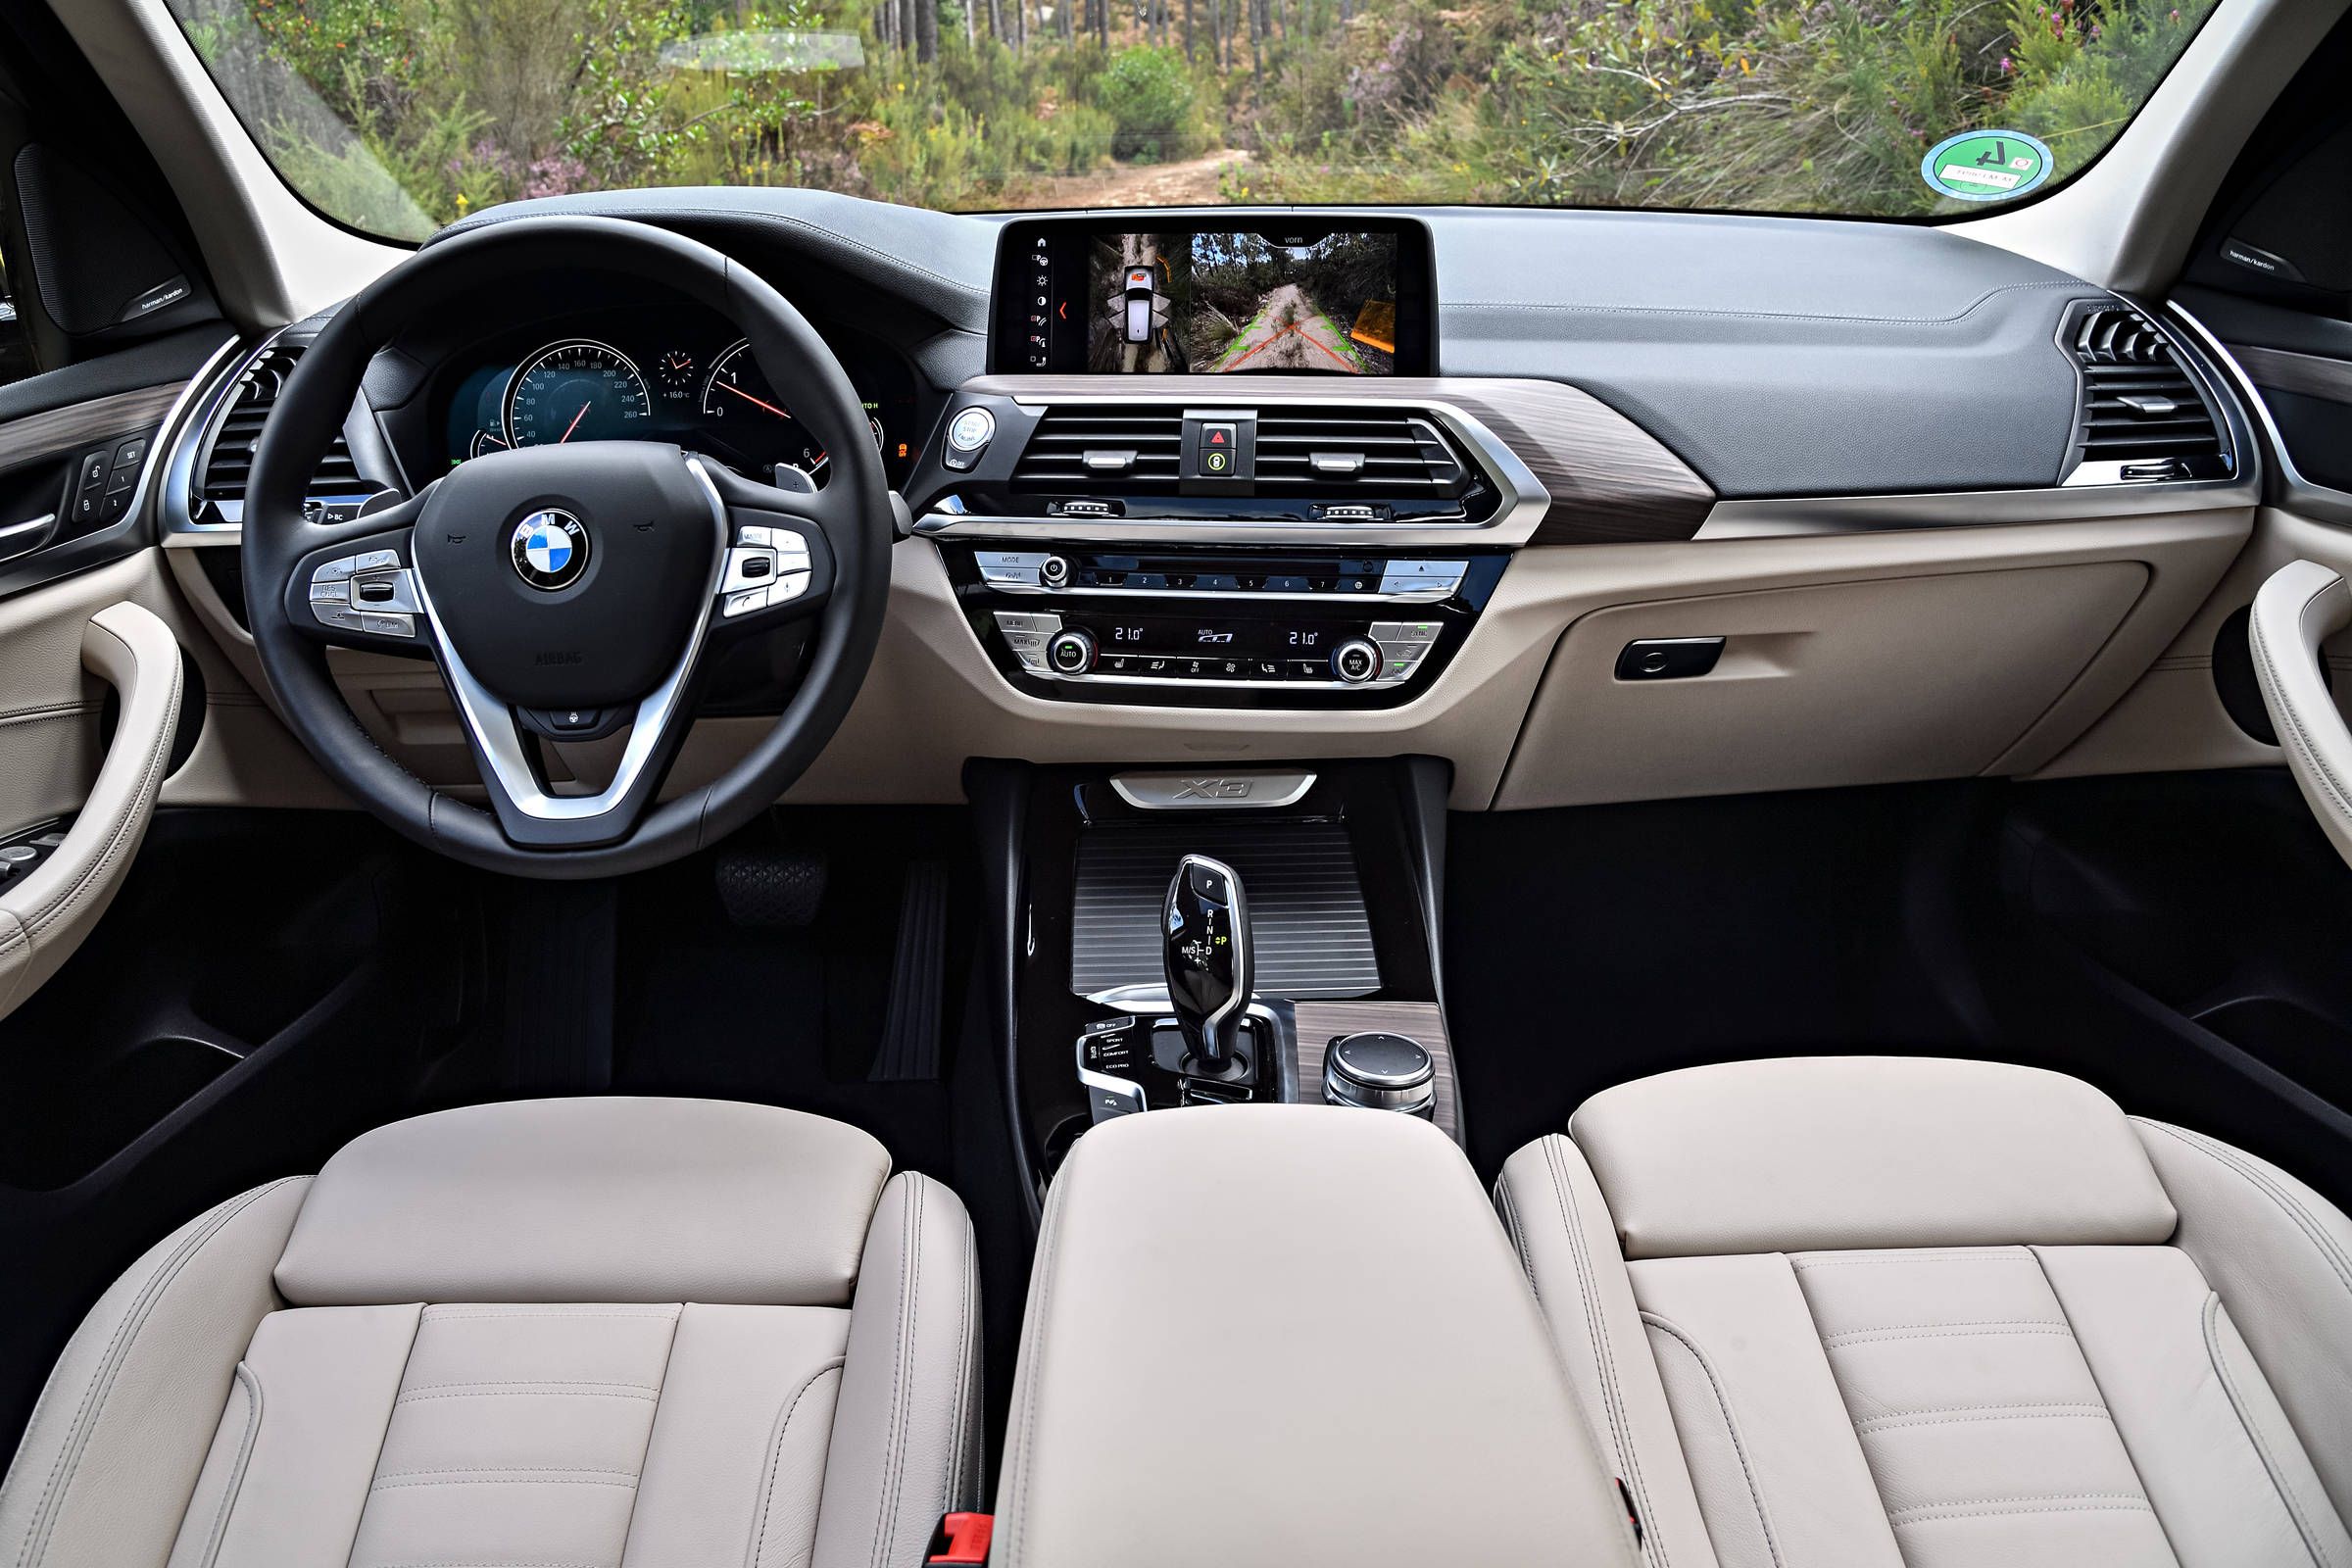 2018 BMW X3 M40i essentials: A tall M wagon